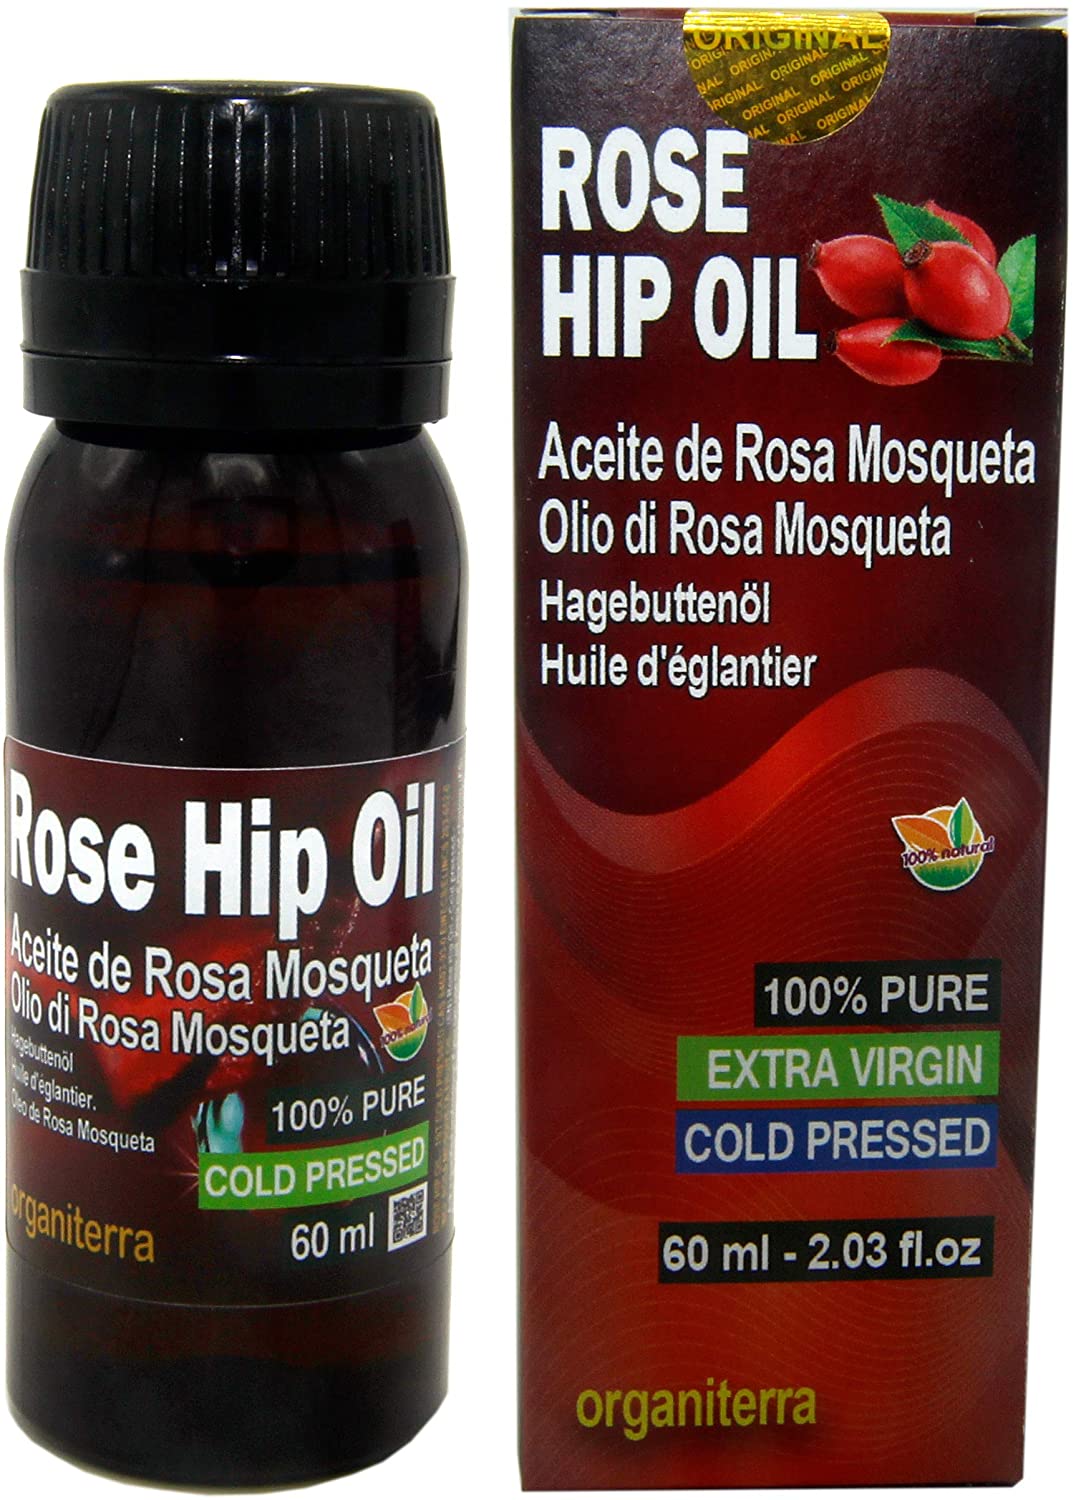 Rose Hip Oil Organiterra 60ml Bottle . Box